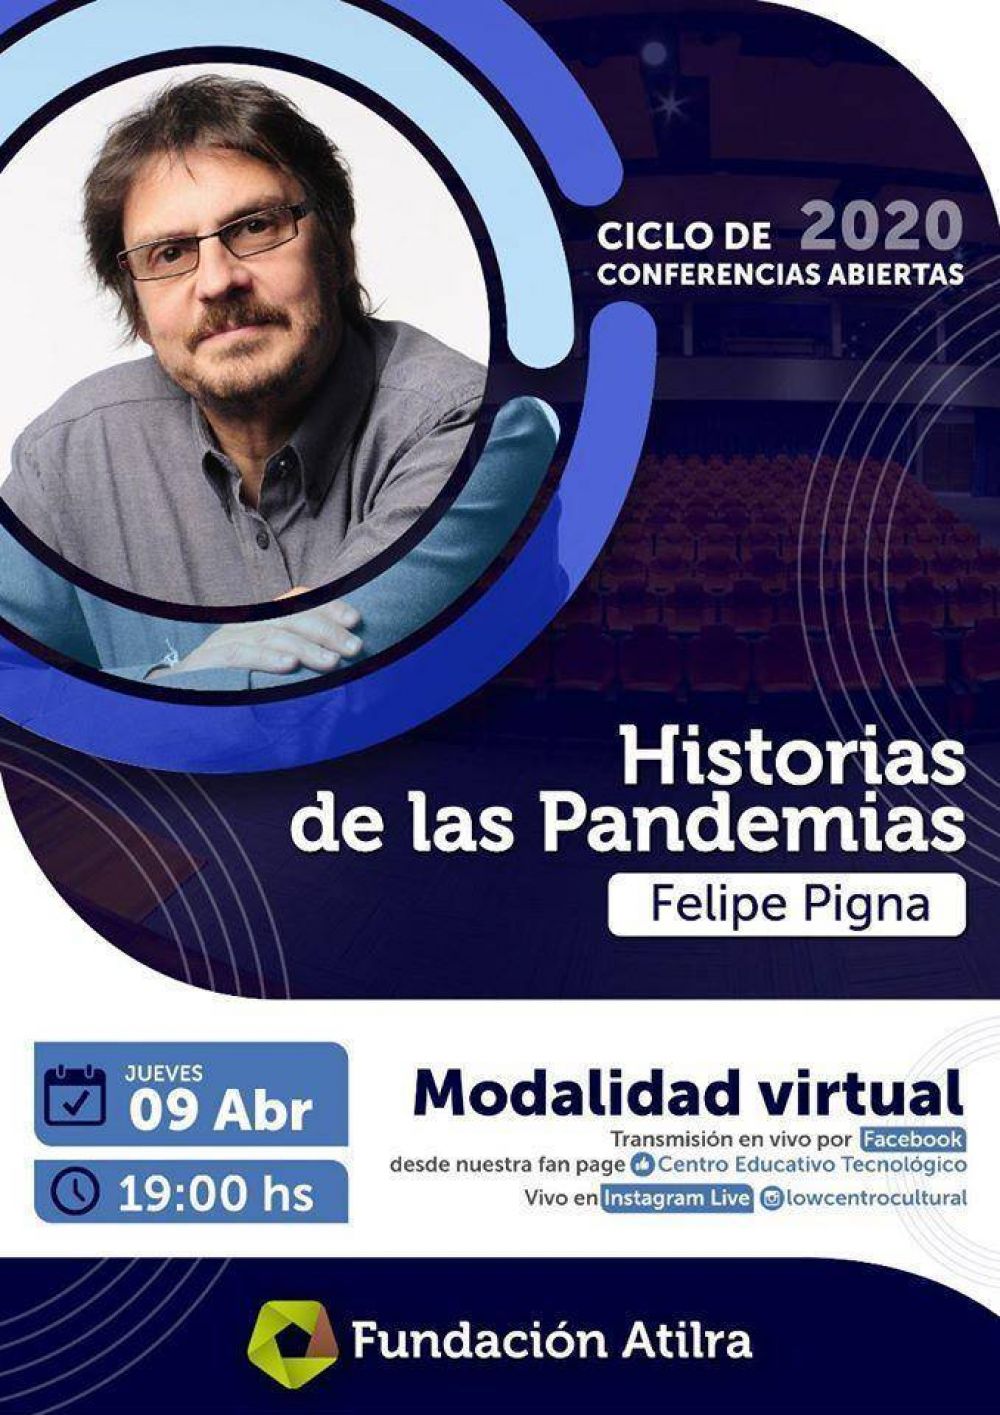 Atilra brinda este jueves la conferencia abierta Historia de las Pandemias, con Felipe Pigna